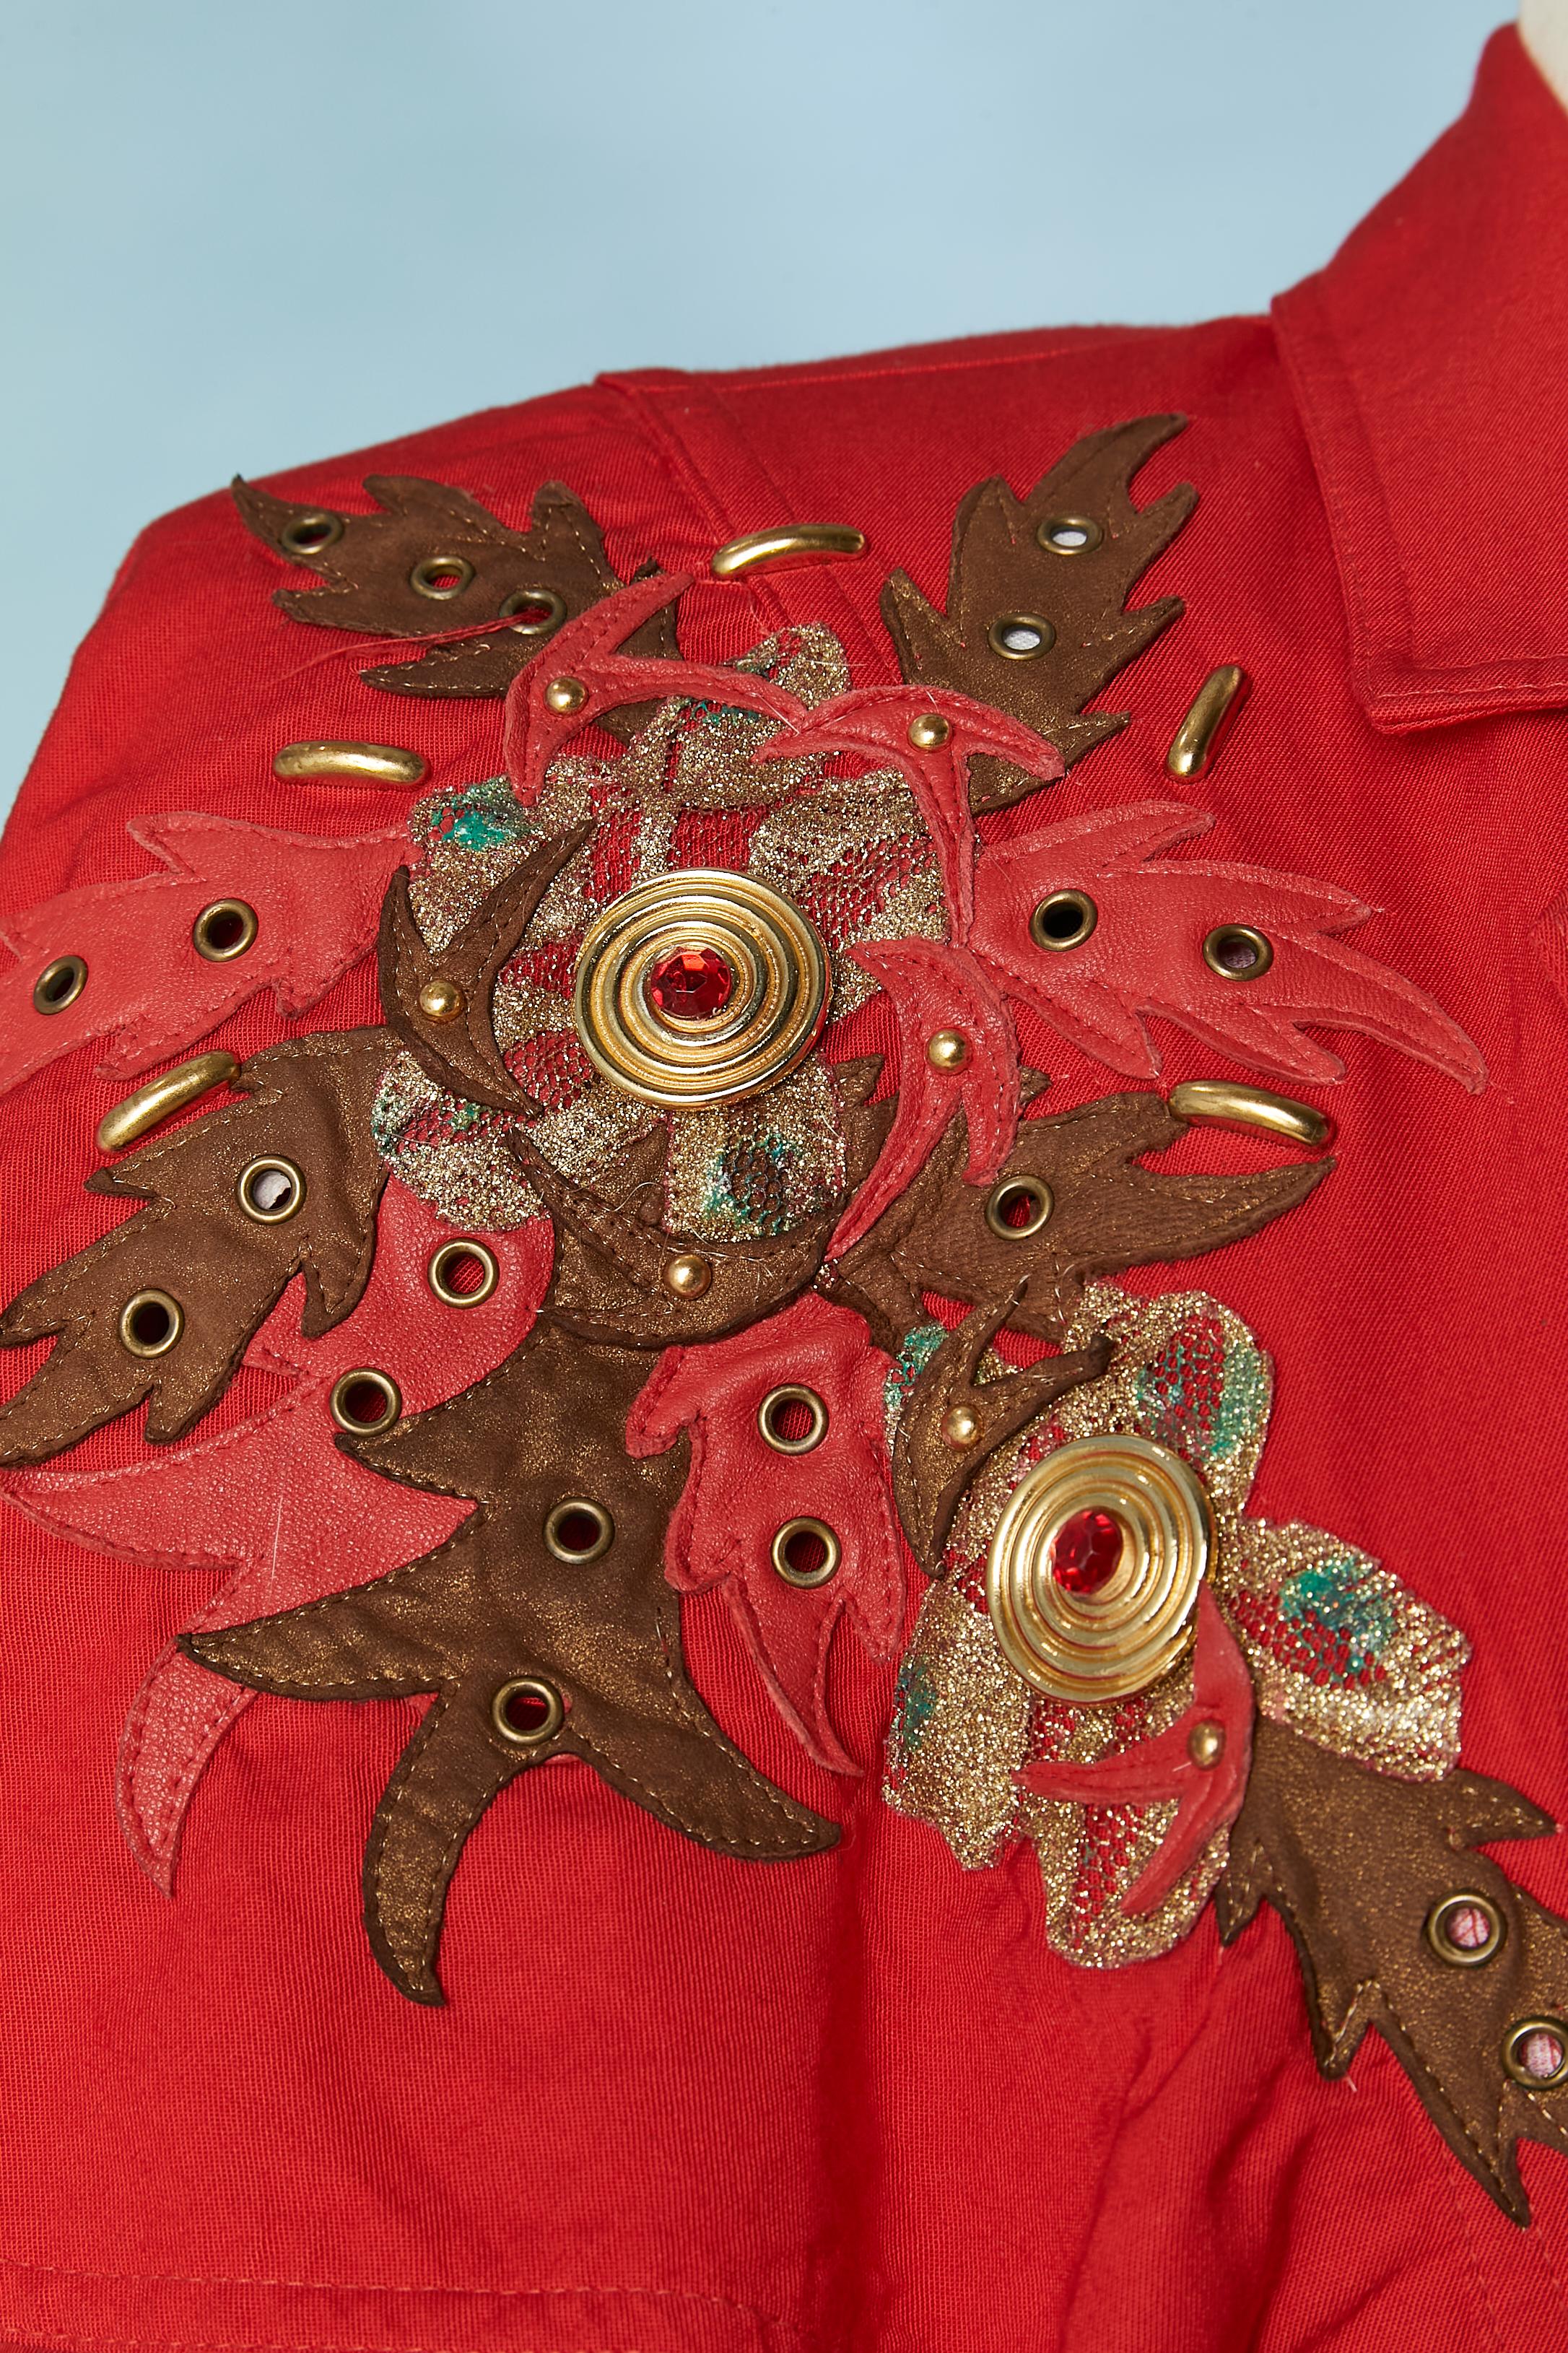 Veste rouge avec mini-cape et appliques en cuir et œillets. Tissu principal : 100% rayonne. Doublure : rayonne ou acétate. PADS D'ÉPAULES. Les boutons sont recouverts du même tissu. 
TAILLE : M 